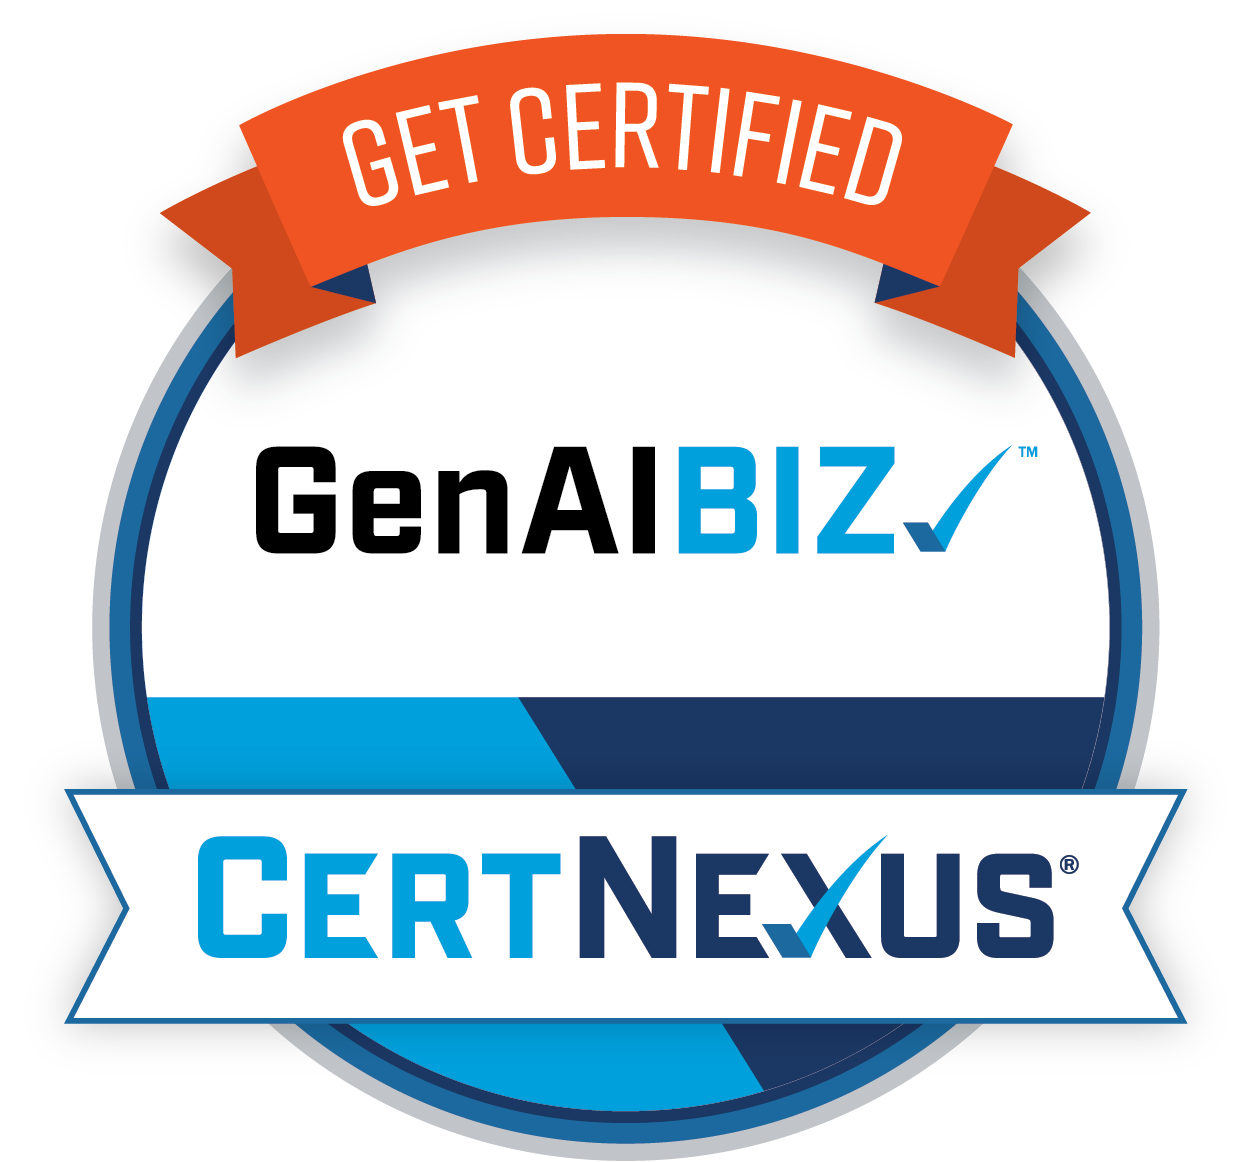 GenAIBIZ Get Certified badge